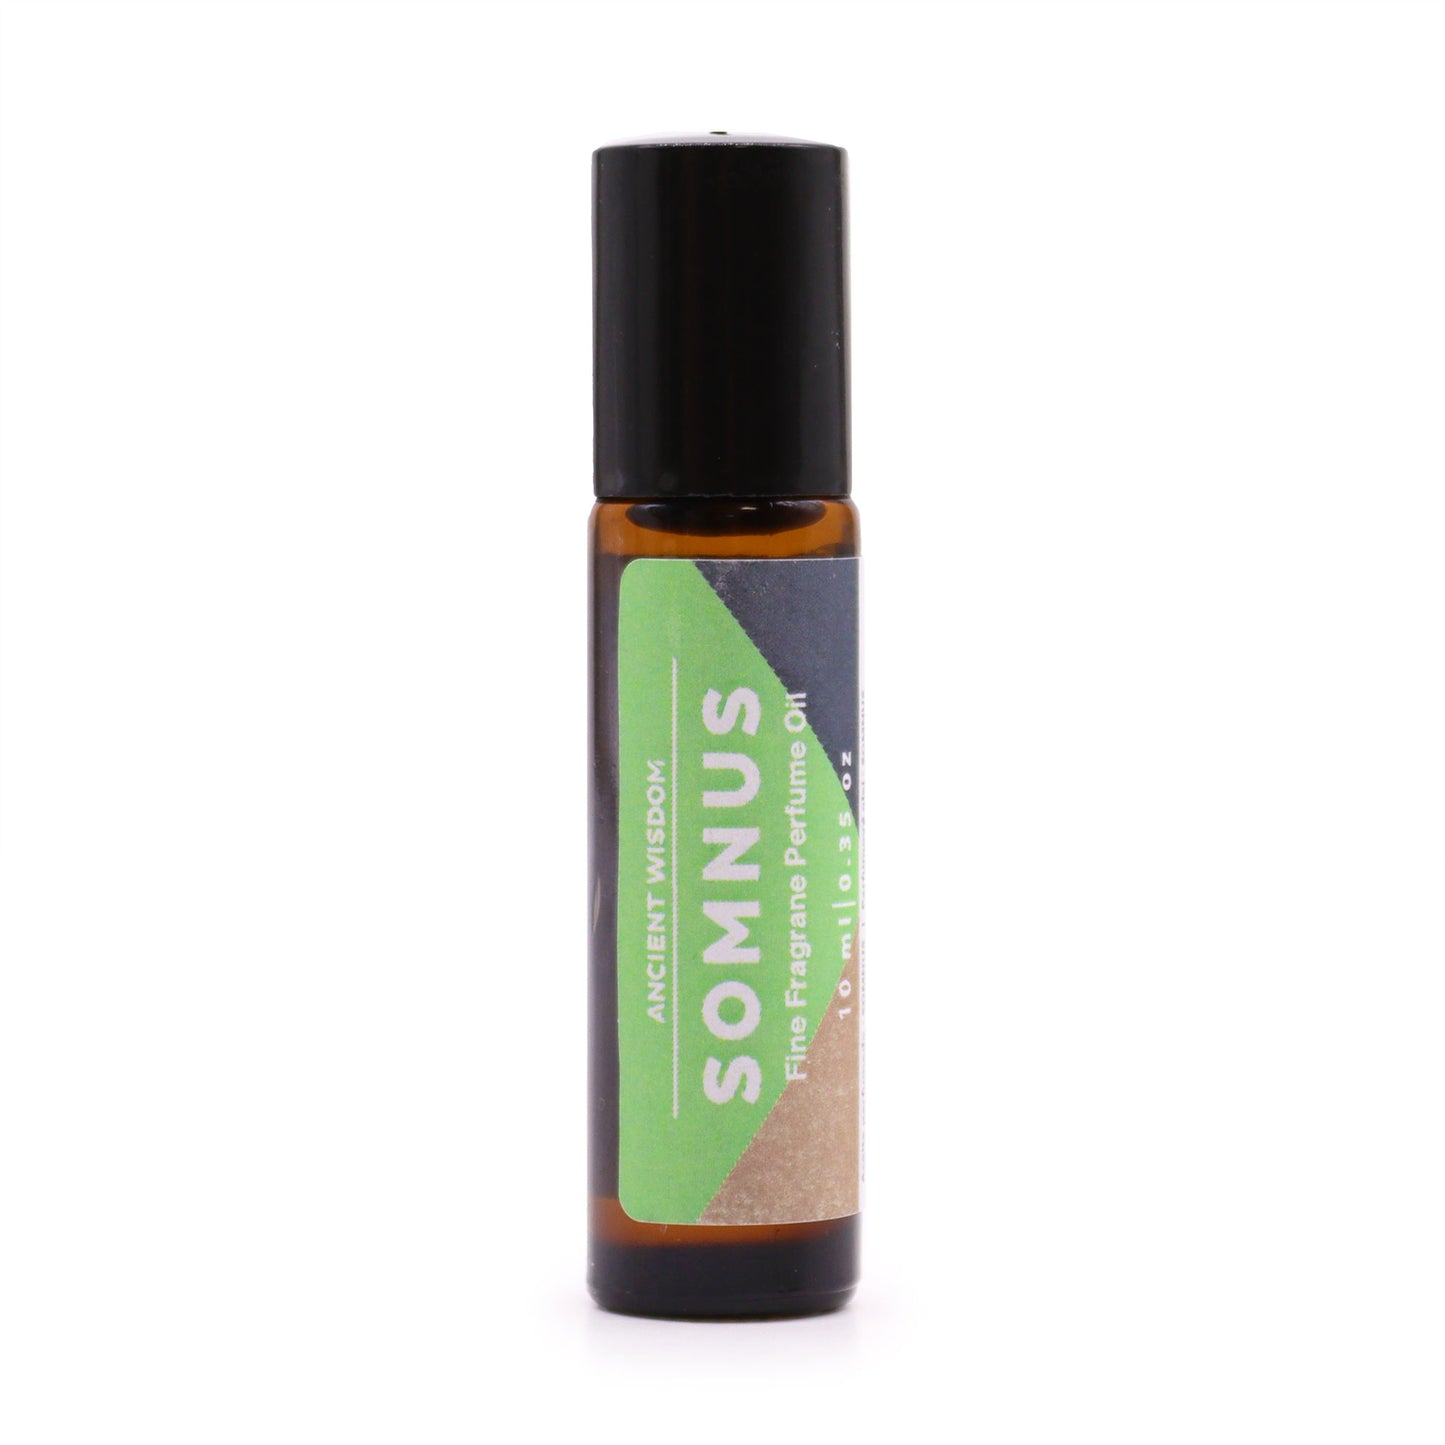 Somnus Fine Fragrance Perfume Oil 10ml - Kaftans direct